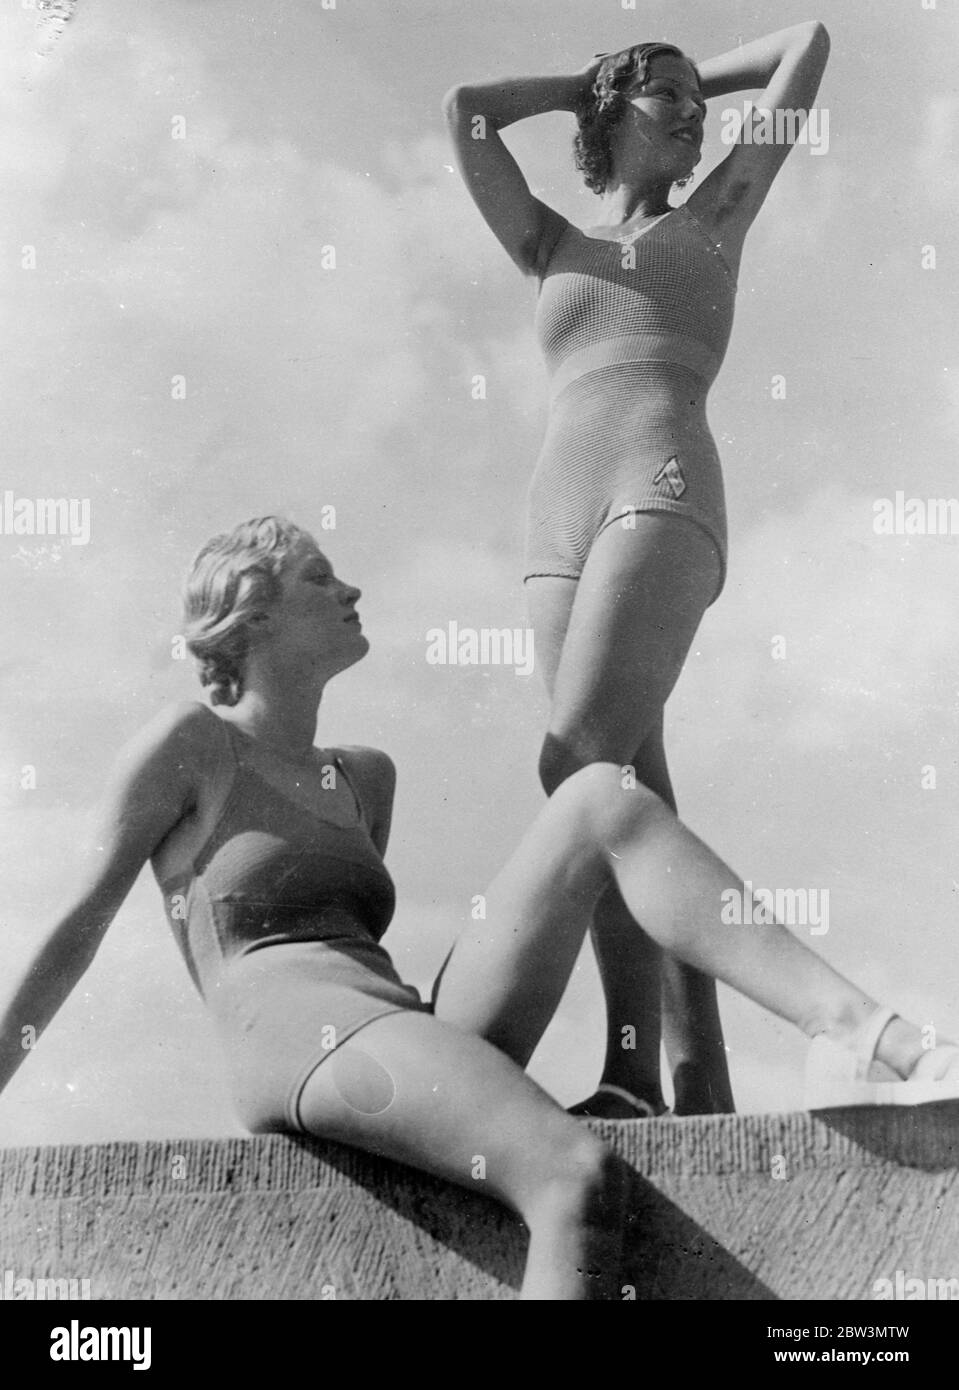 1936 ragazze da bagno per avere più stanza di stretching , costumi da  spiaggia brevi ed elastici . Il filato elastico è un materiale popolare per  i costumi da bagno di quest'